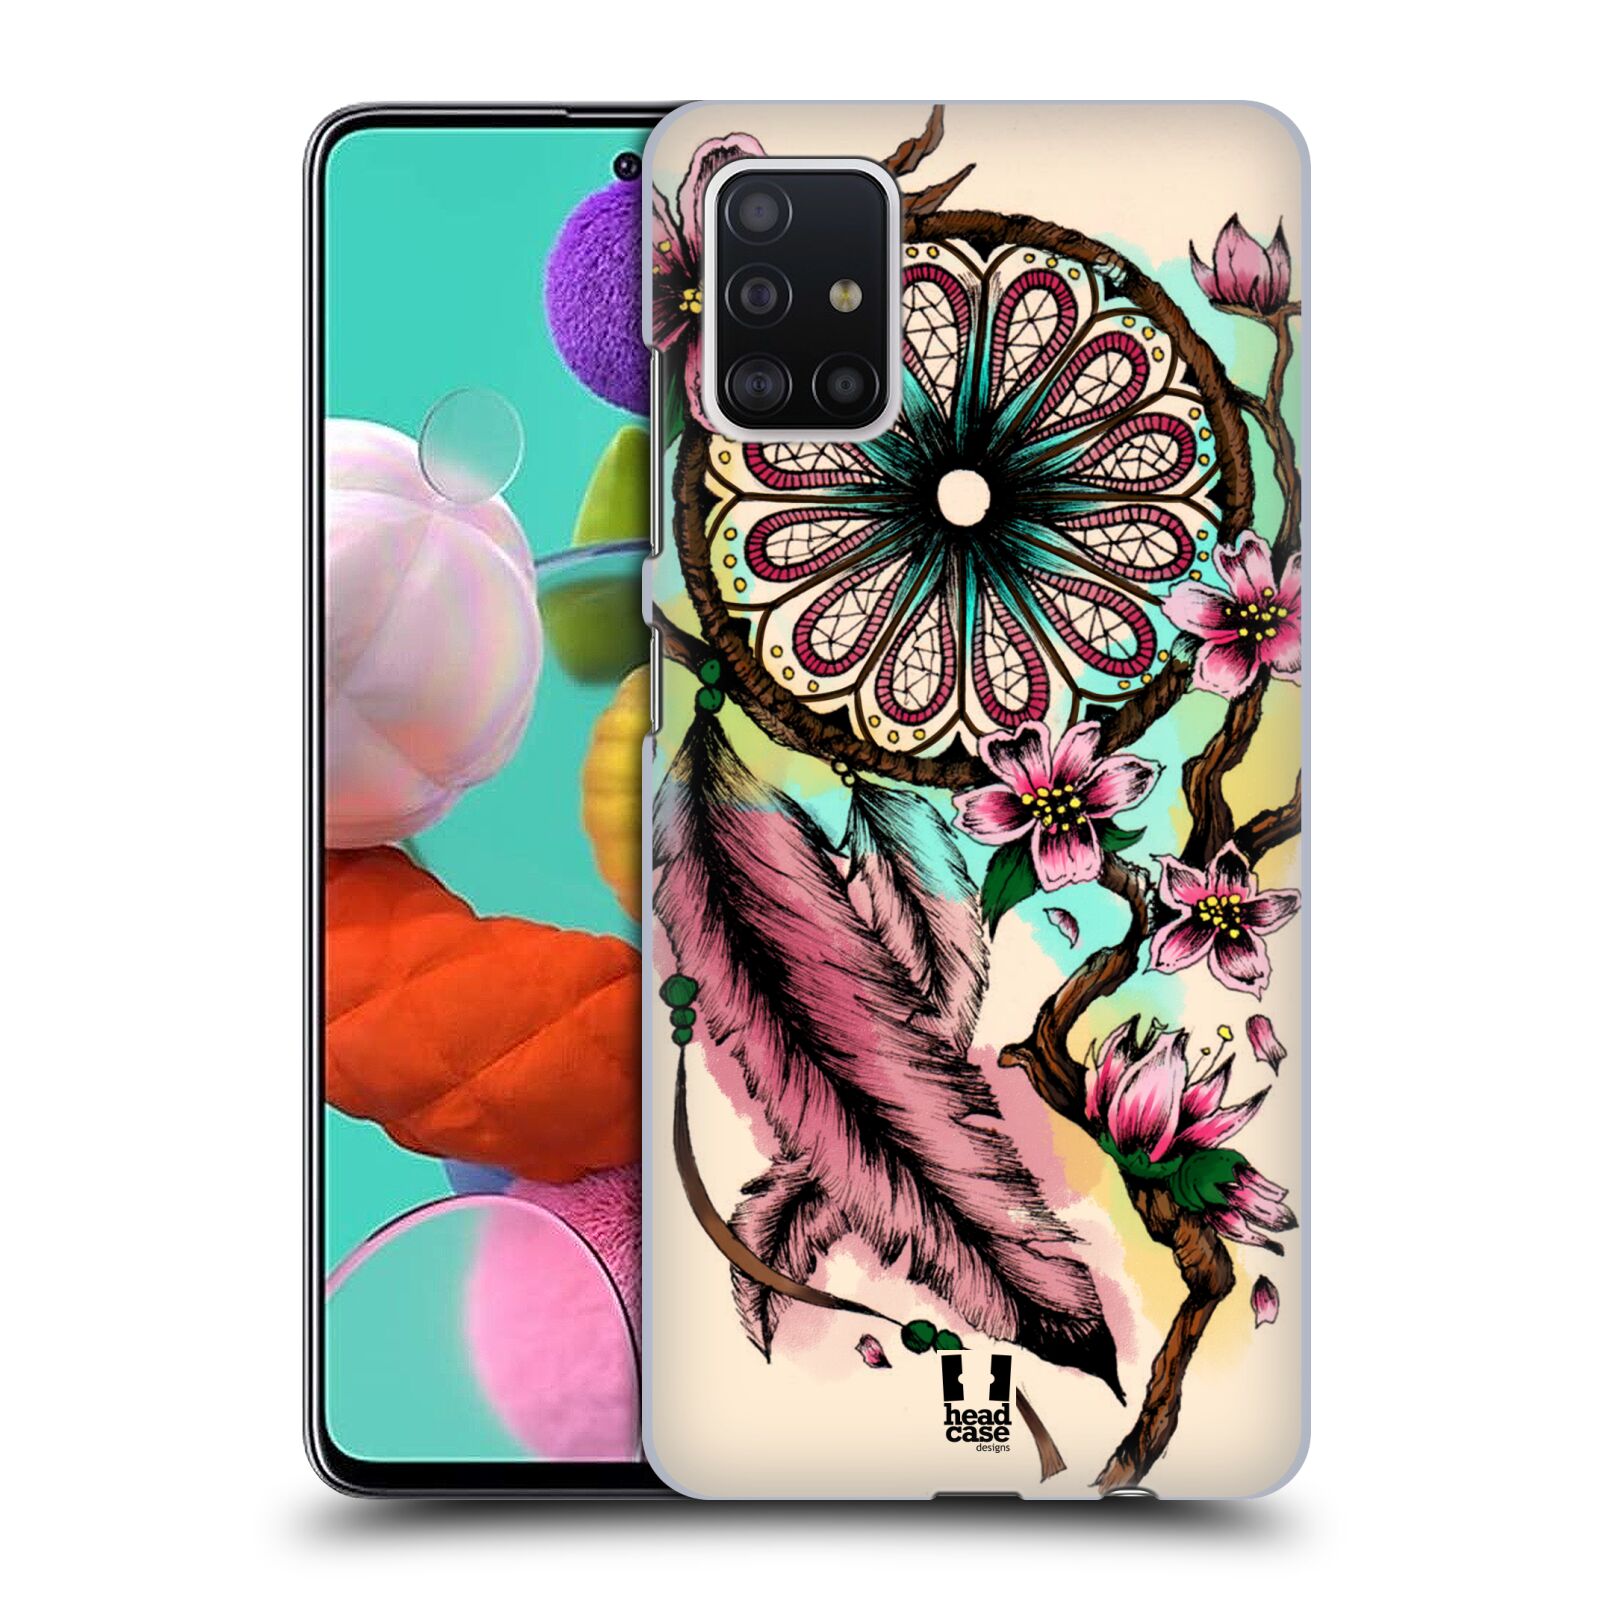 Pouzdro na mobil Samsung Galaxy A51 - HEAD CASE - vzor Květy lapač snů růžová